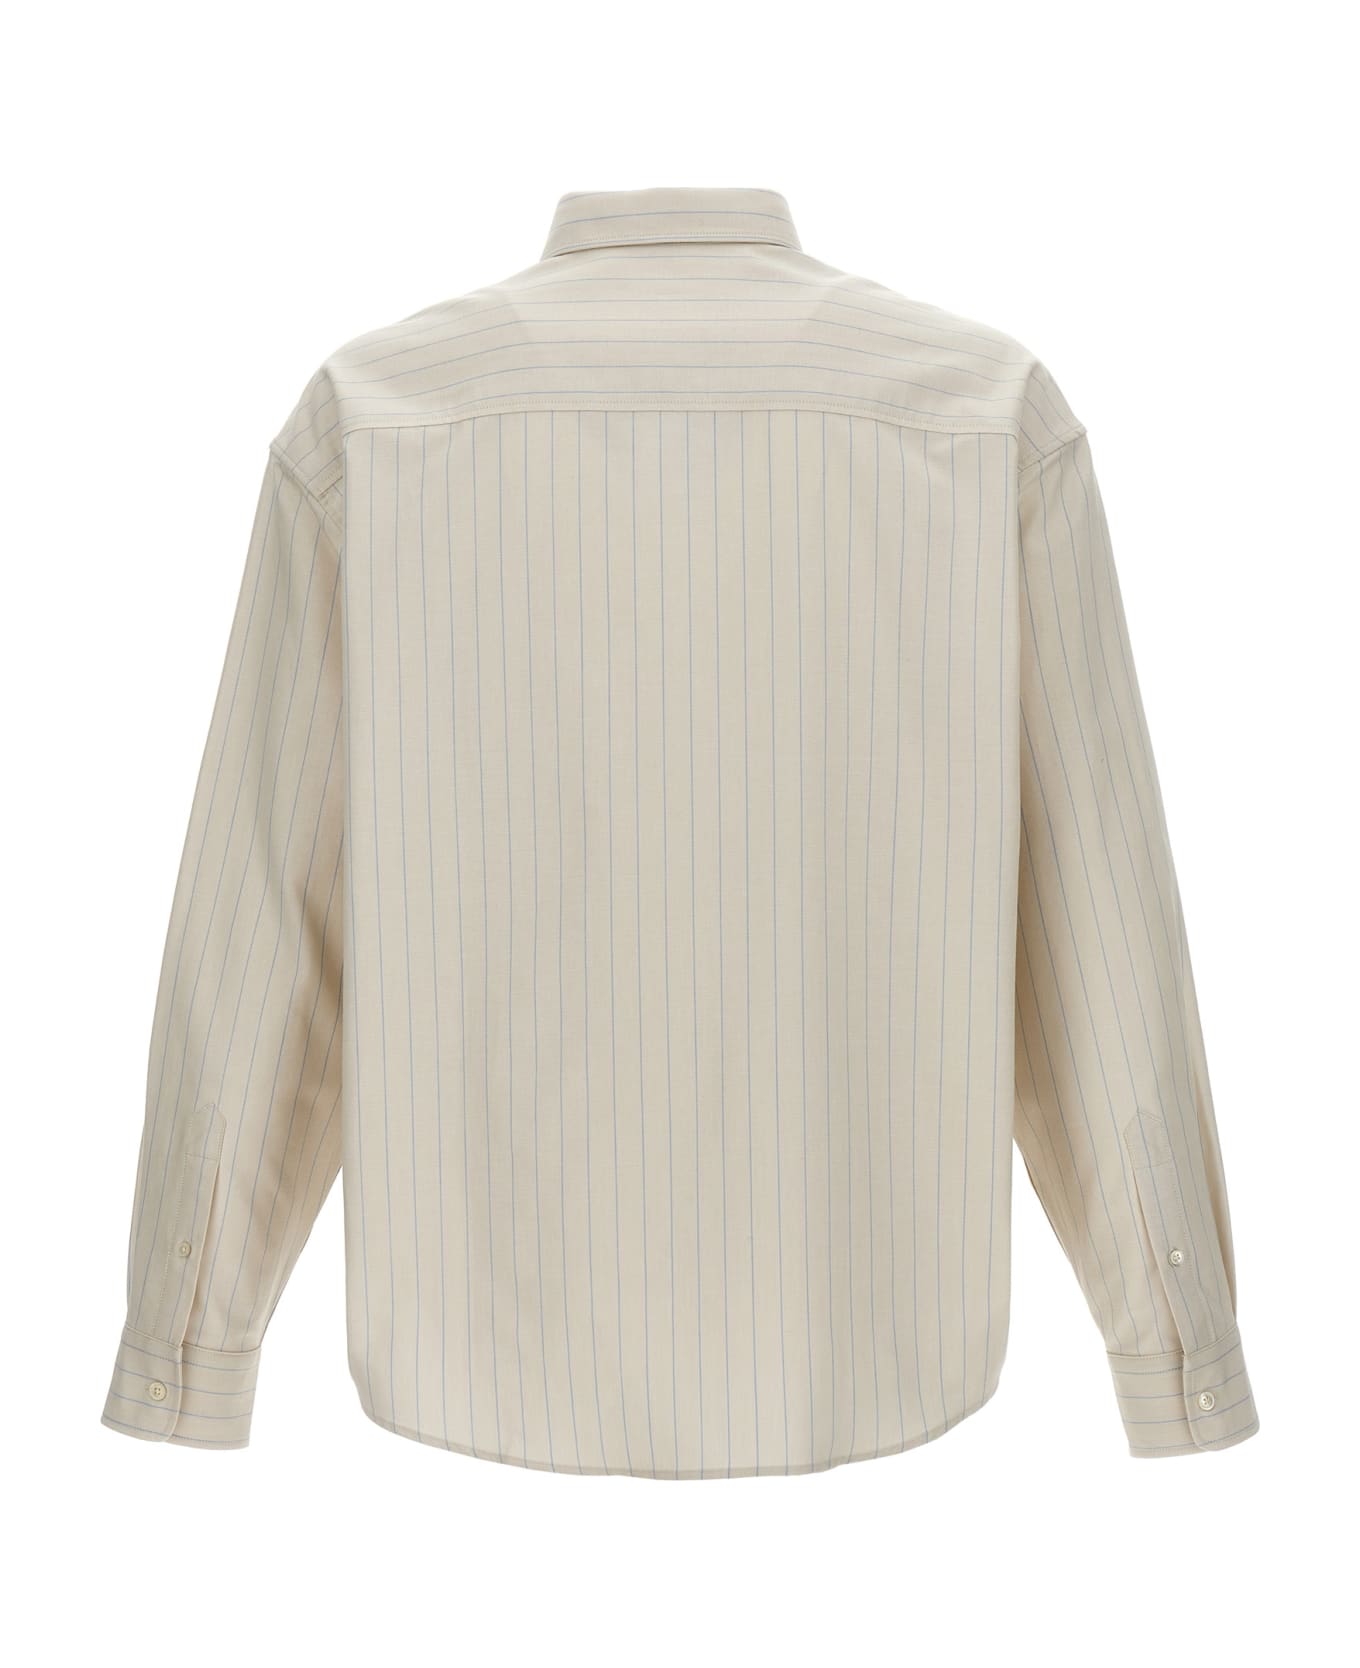 Ami Alexandre Mattiussi Logo Embroidery Striped Shirt - Multicolor シャツ